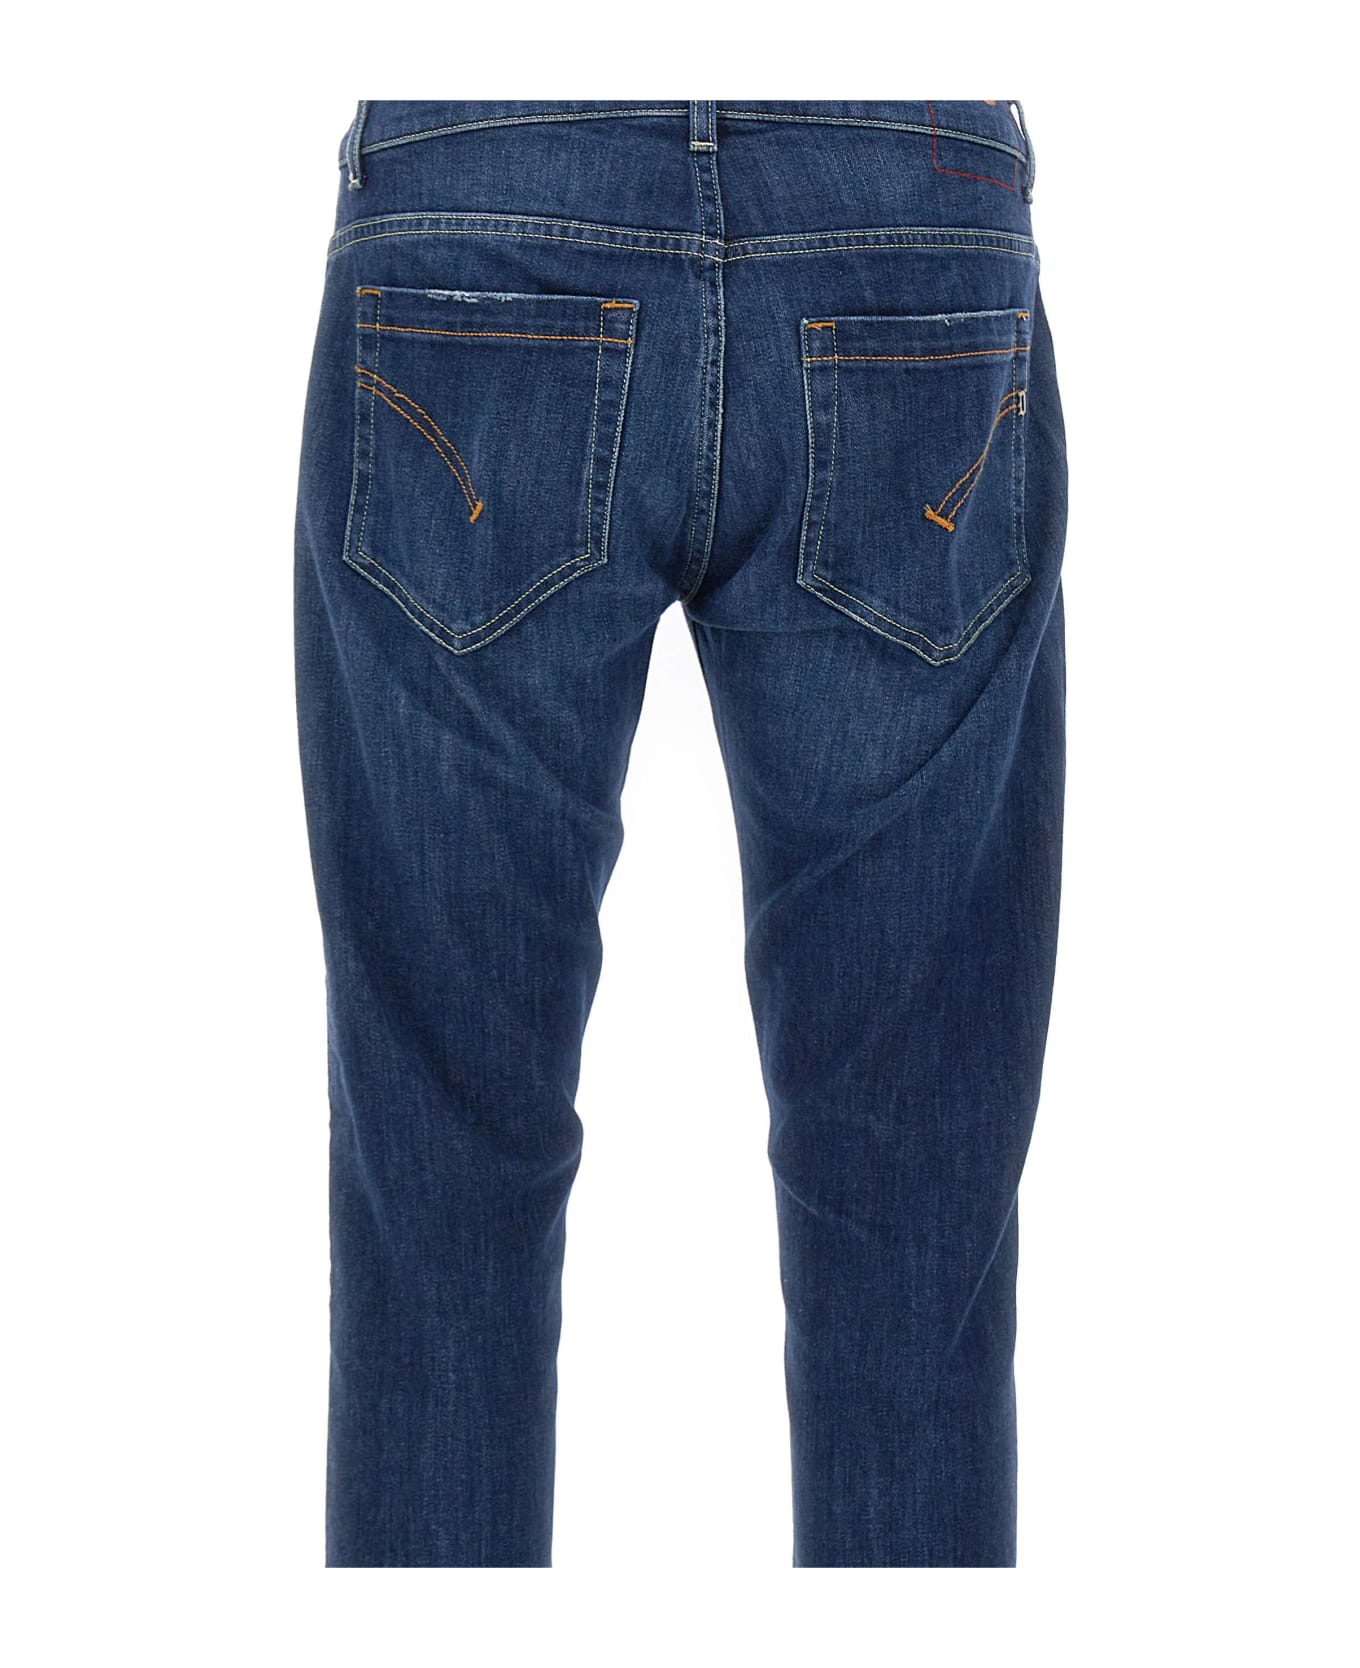 Dondup 'george' Jeans - Blu Medio Scuro